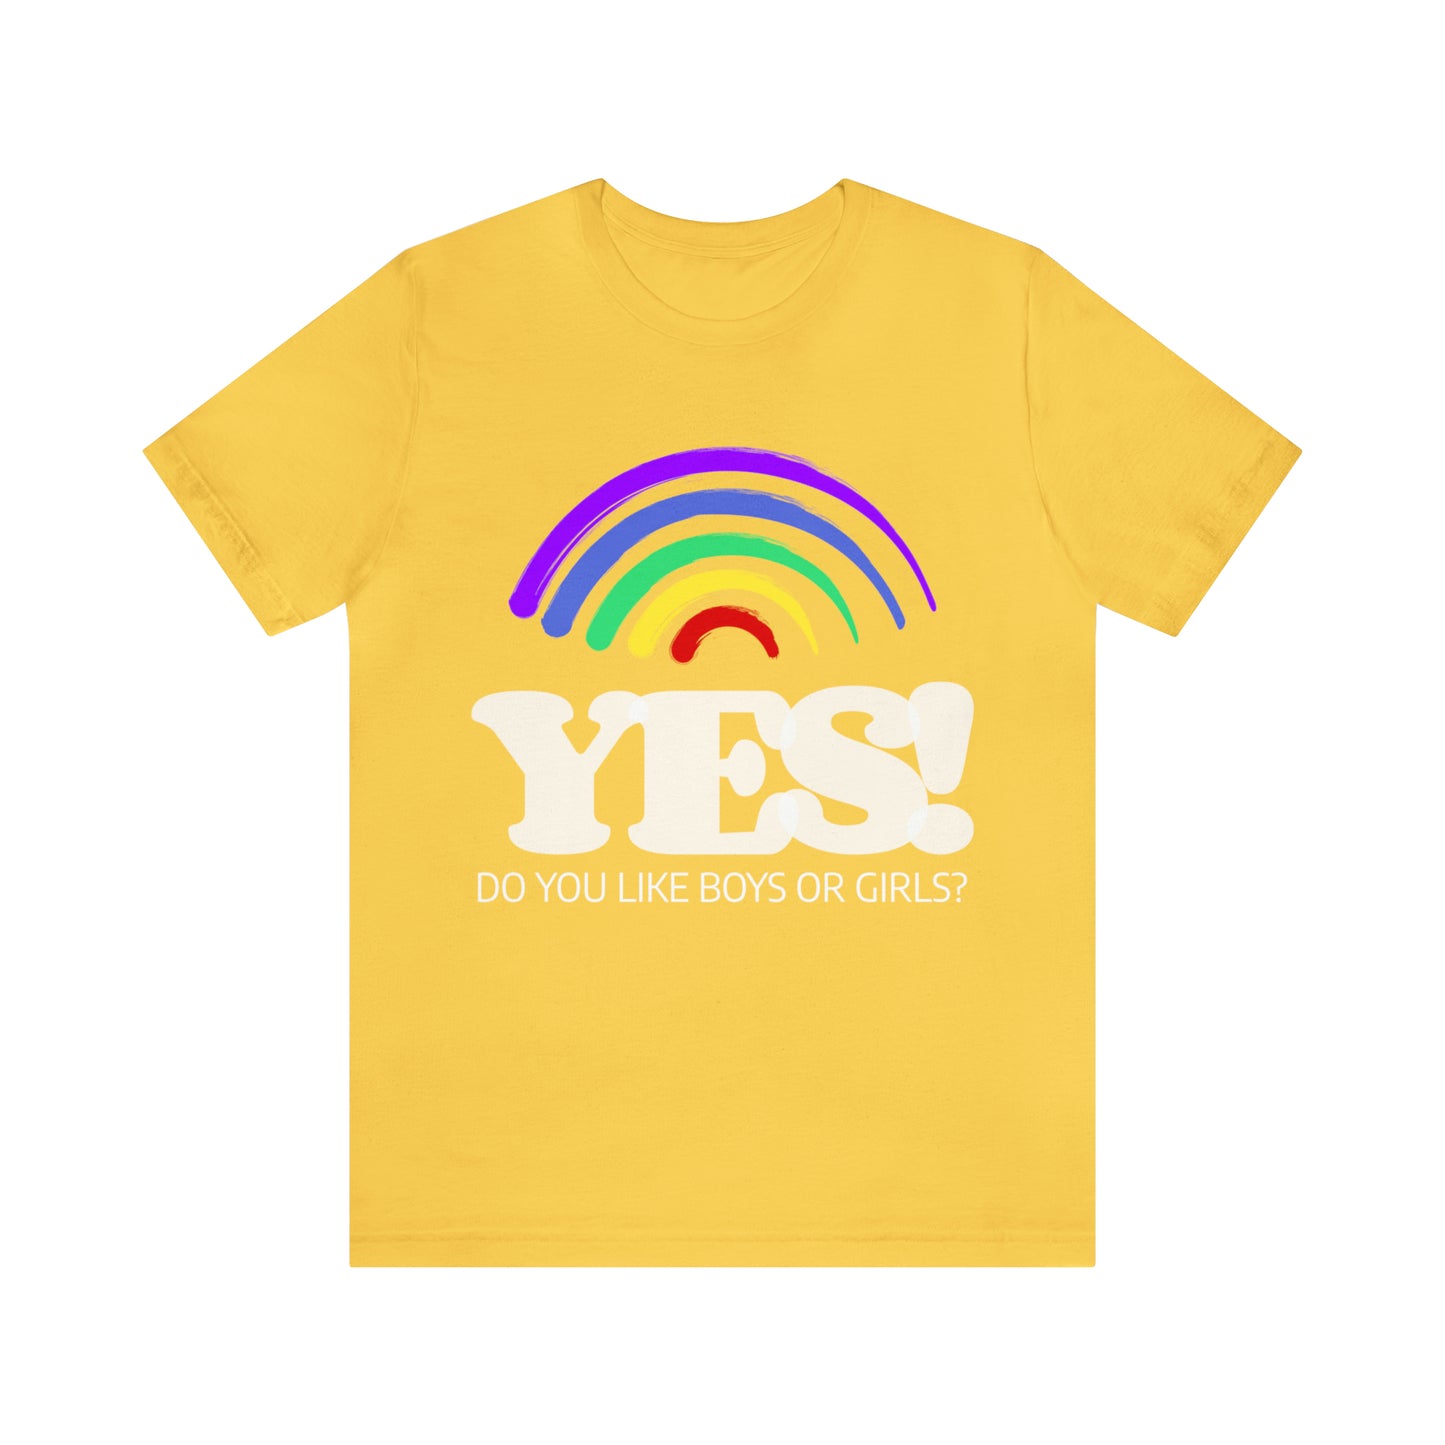 Do You Like Boys Or Girls? Yes! - Unisex T-Shirt